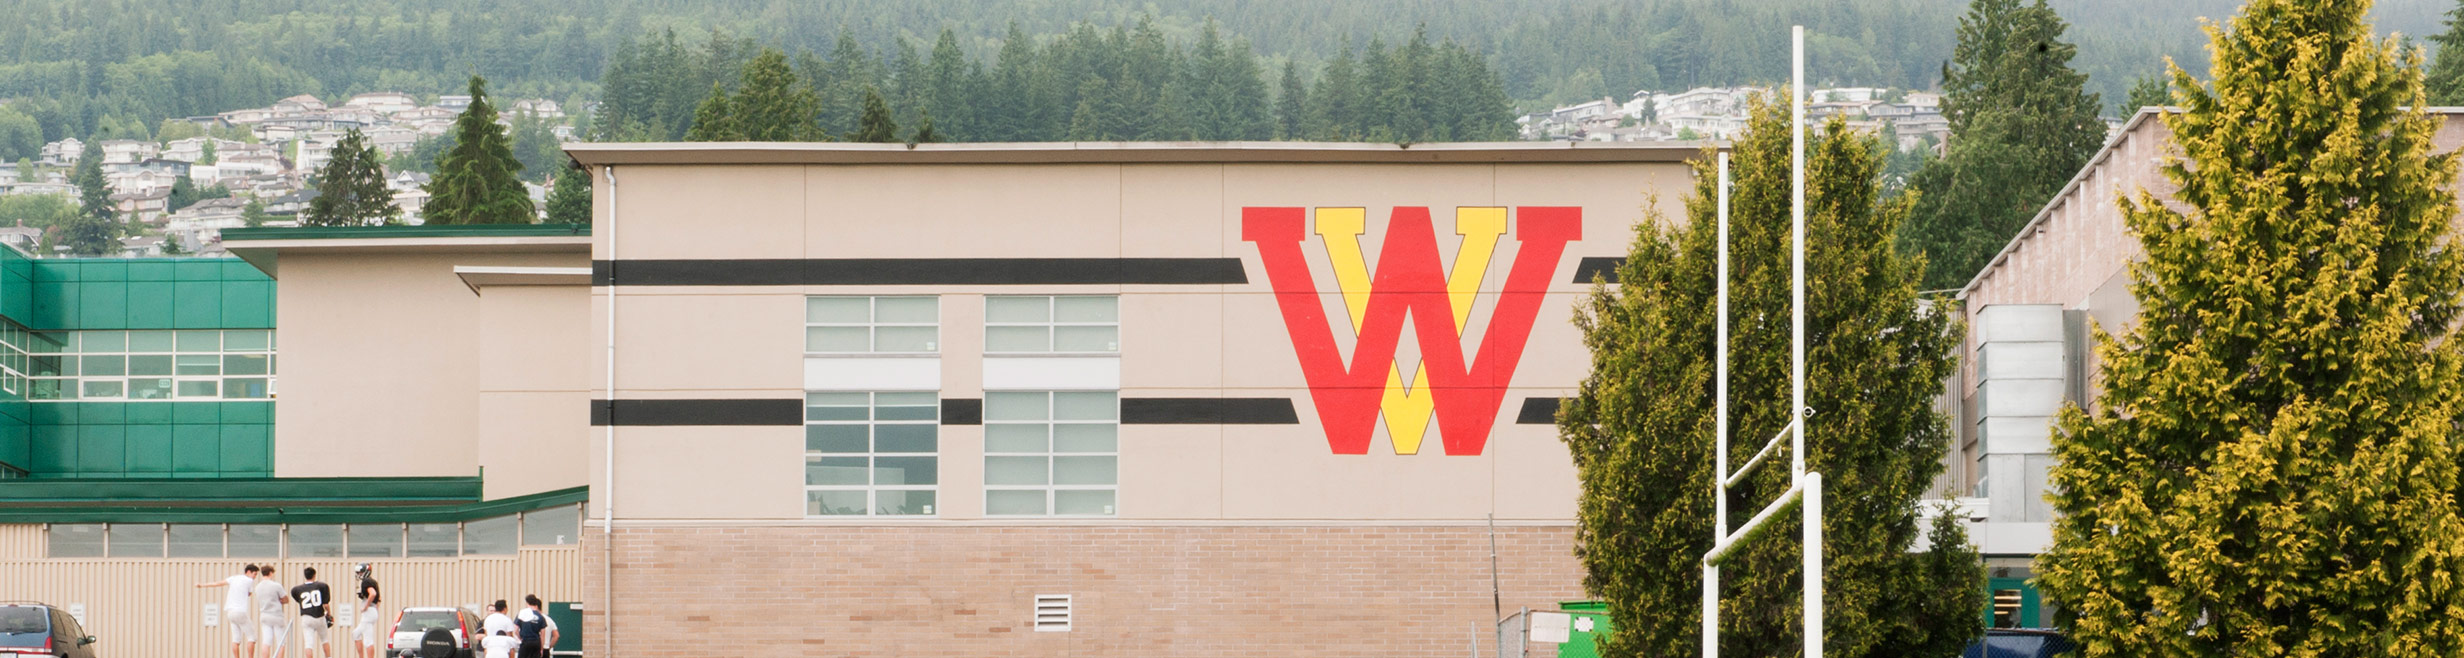 west-vancouver-schools-banner-01